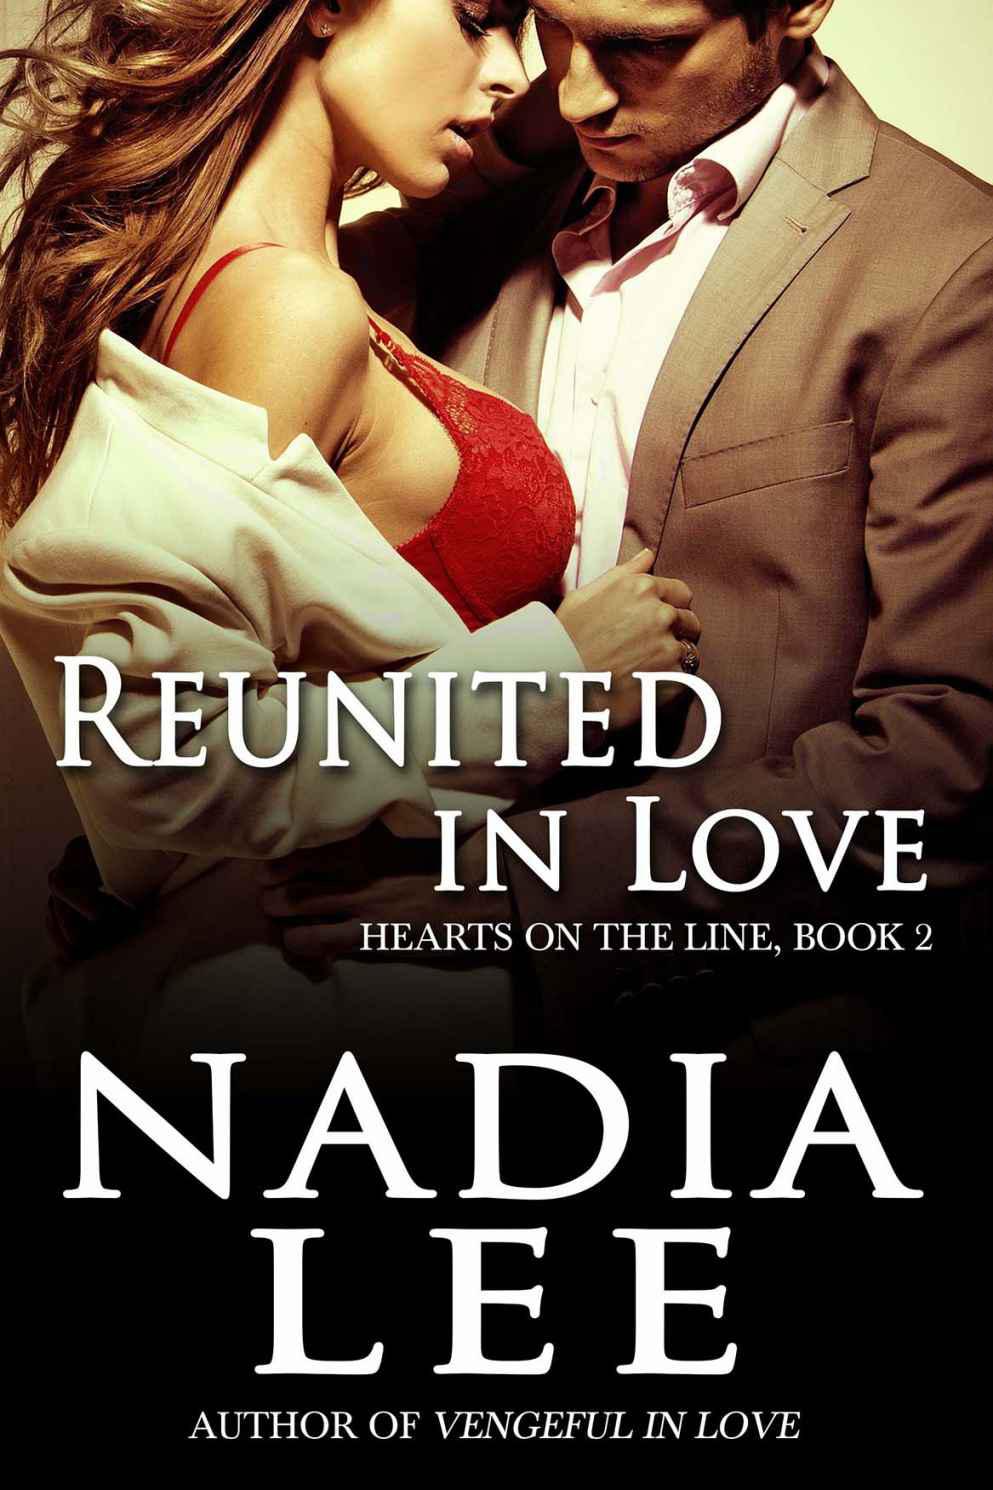 Reunited in Love by Nadia Lee